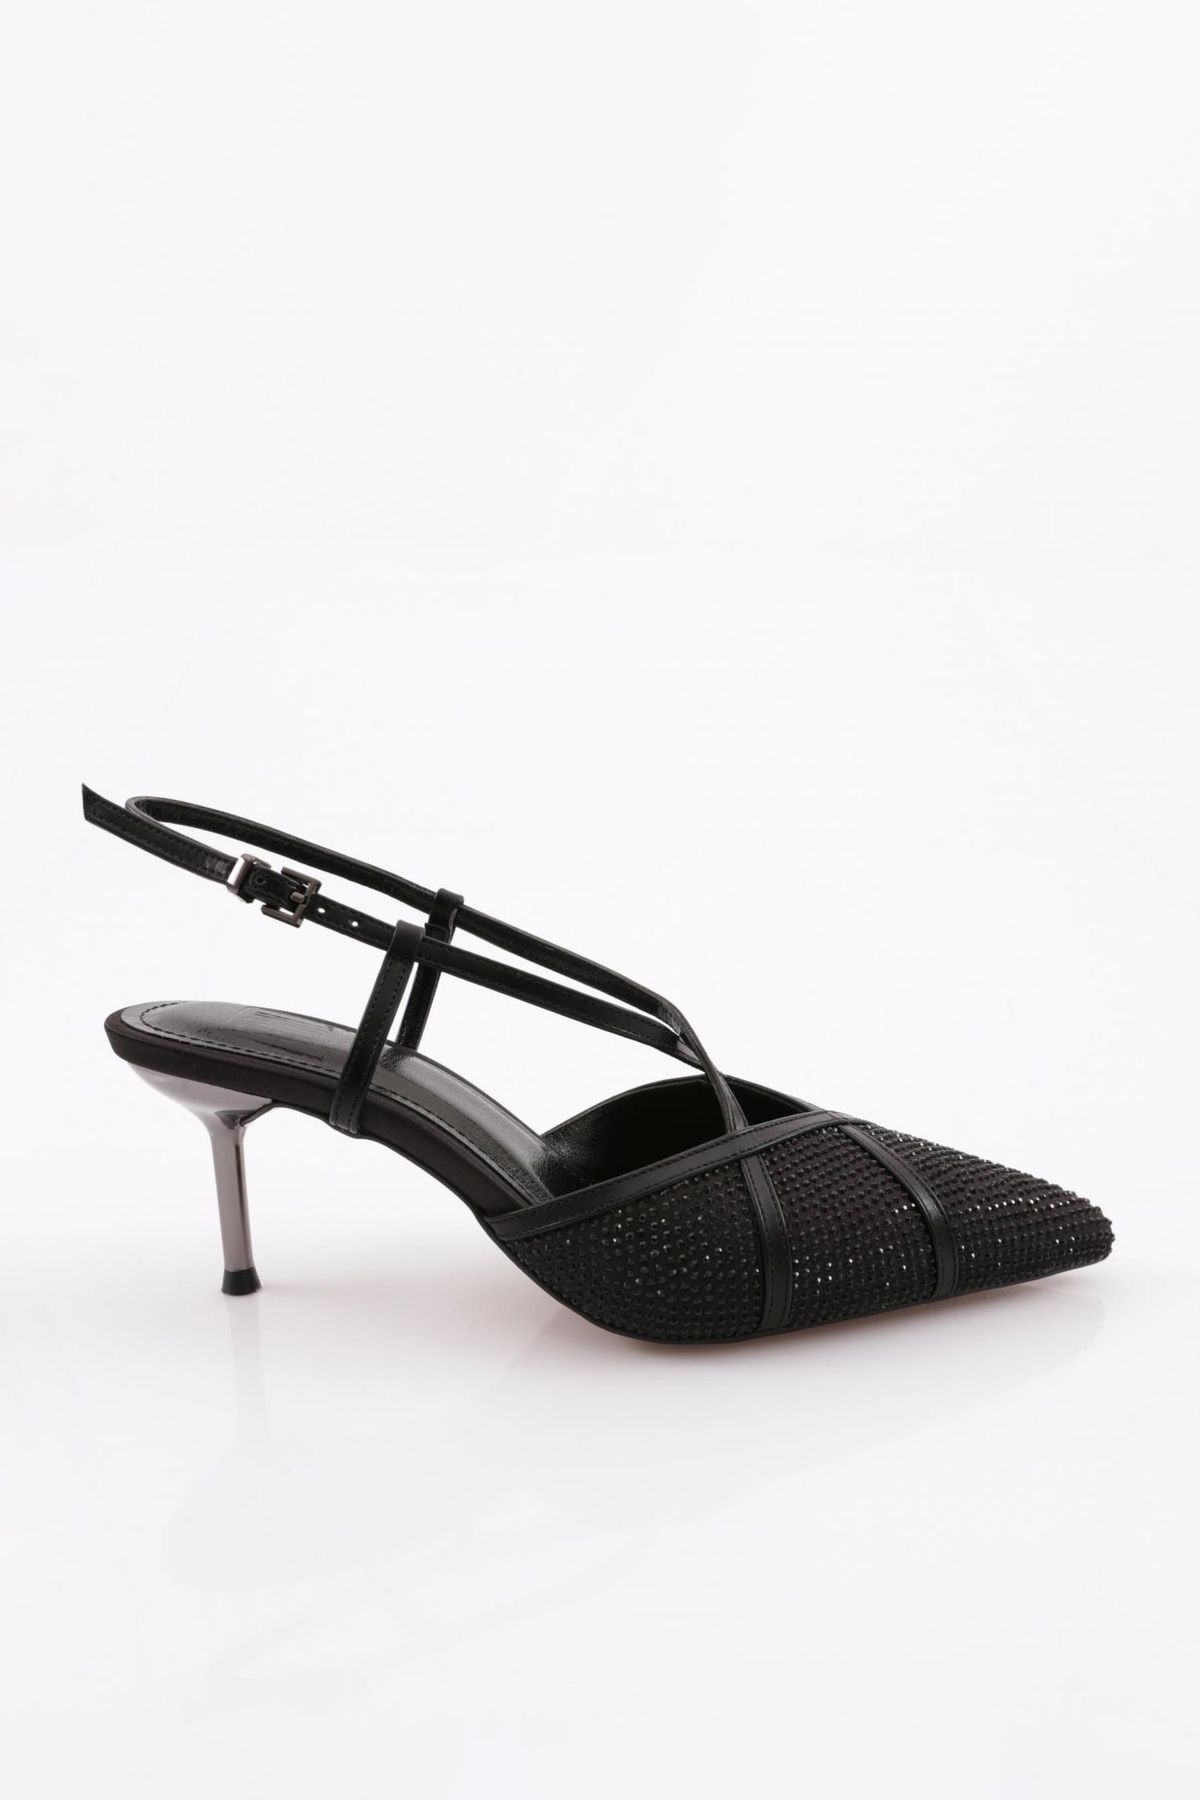 Dgn 1770 Kadin Sivri Burun Taşli Parmak Dekolteli Çapraz Bant Arkasi Açik Topuklu Ayakkabı